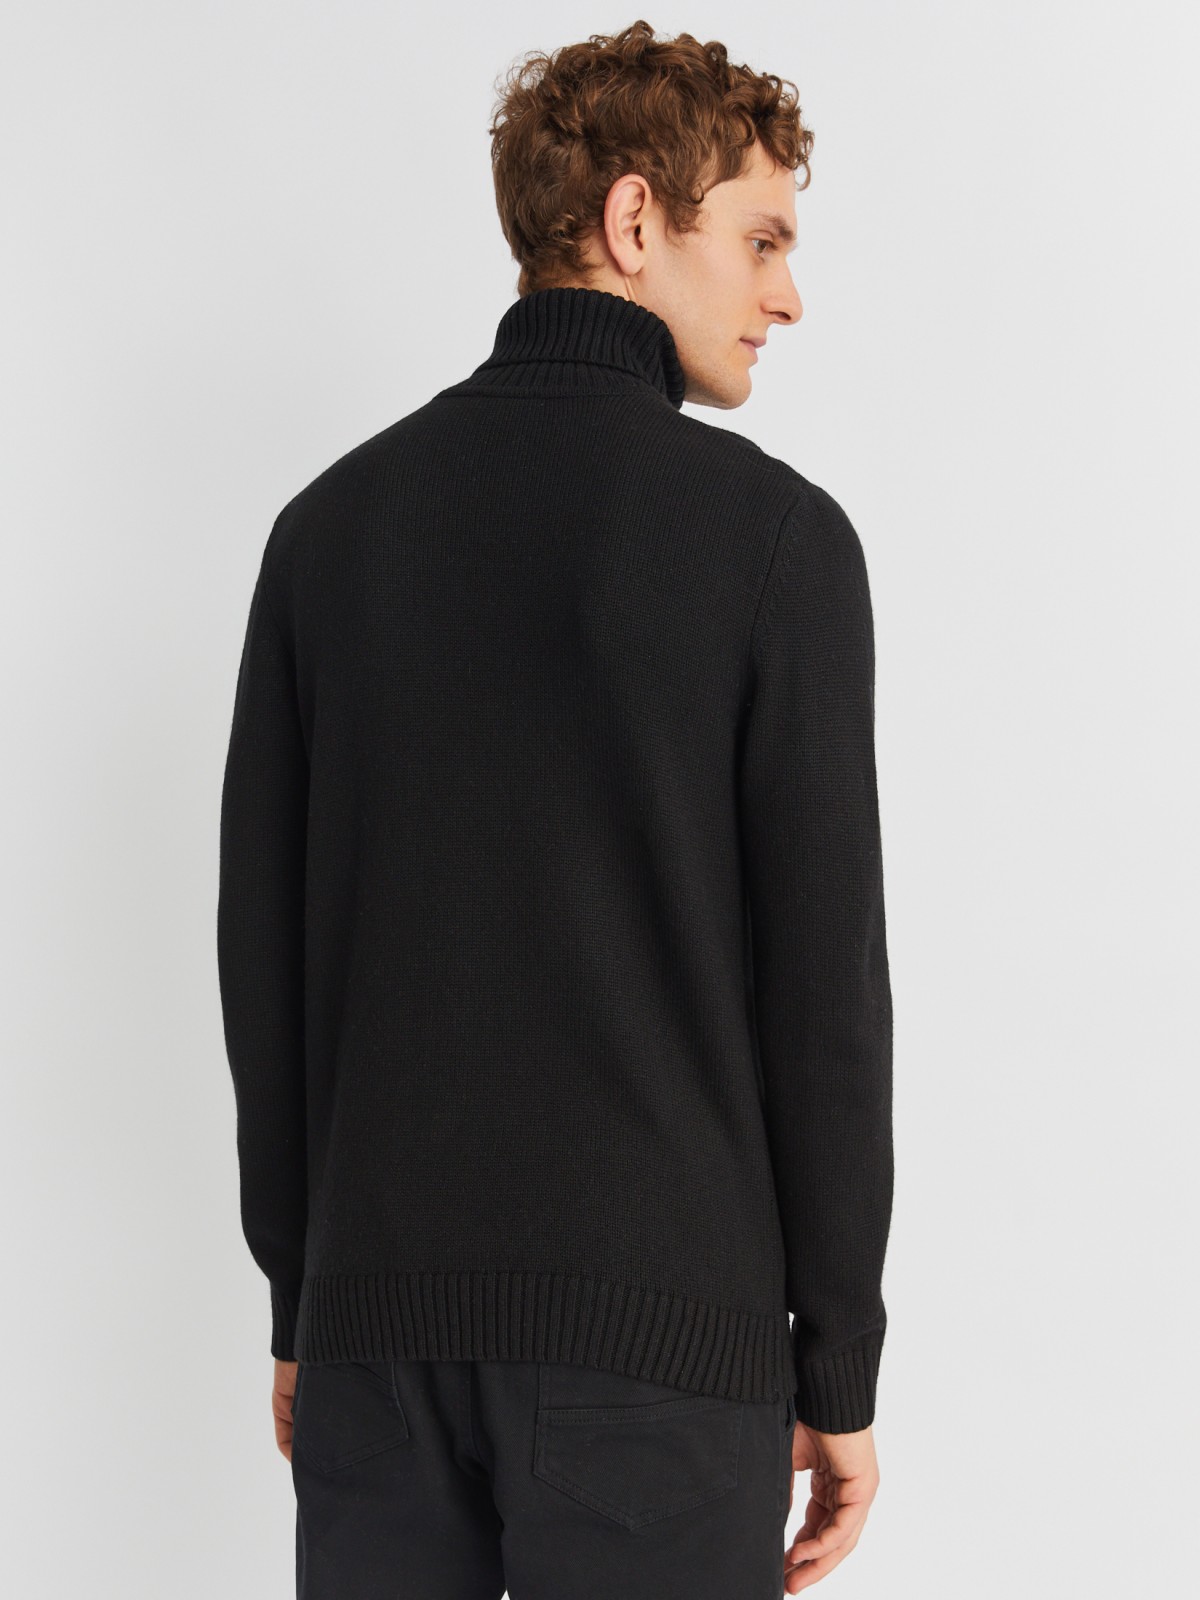 Вязаная шерстяная водолазка-свитер с горлом zolla 013436163072, цвет черный, размер M - фото 6